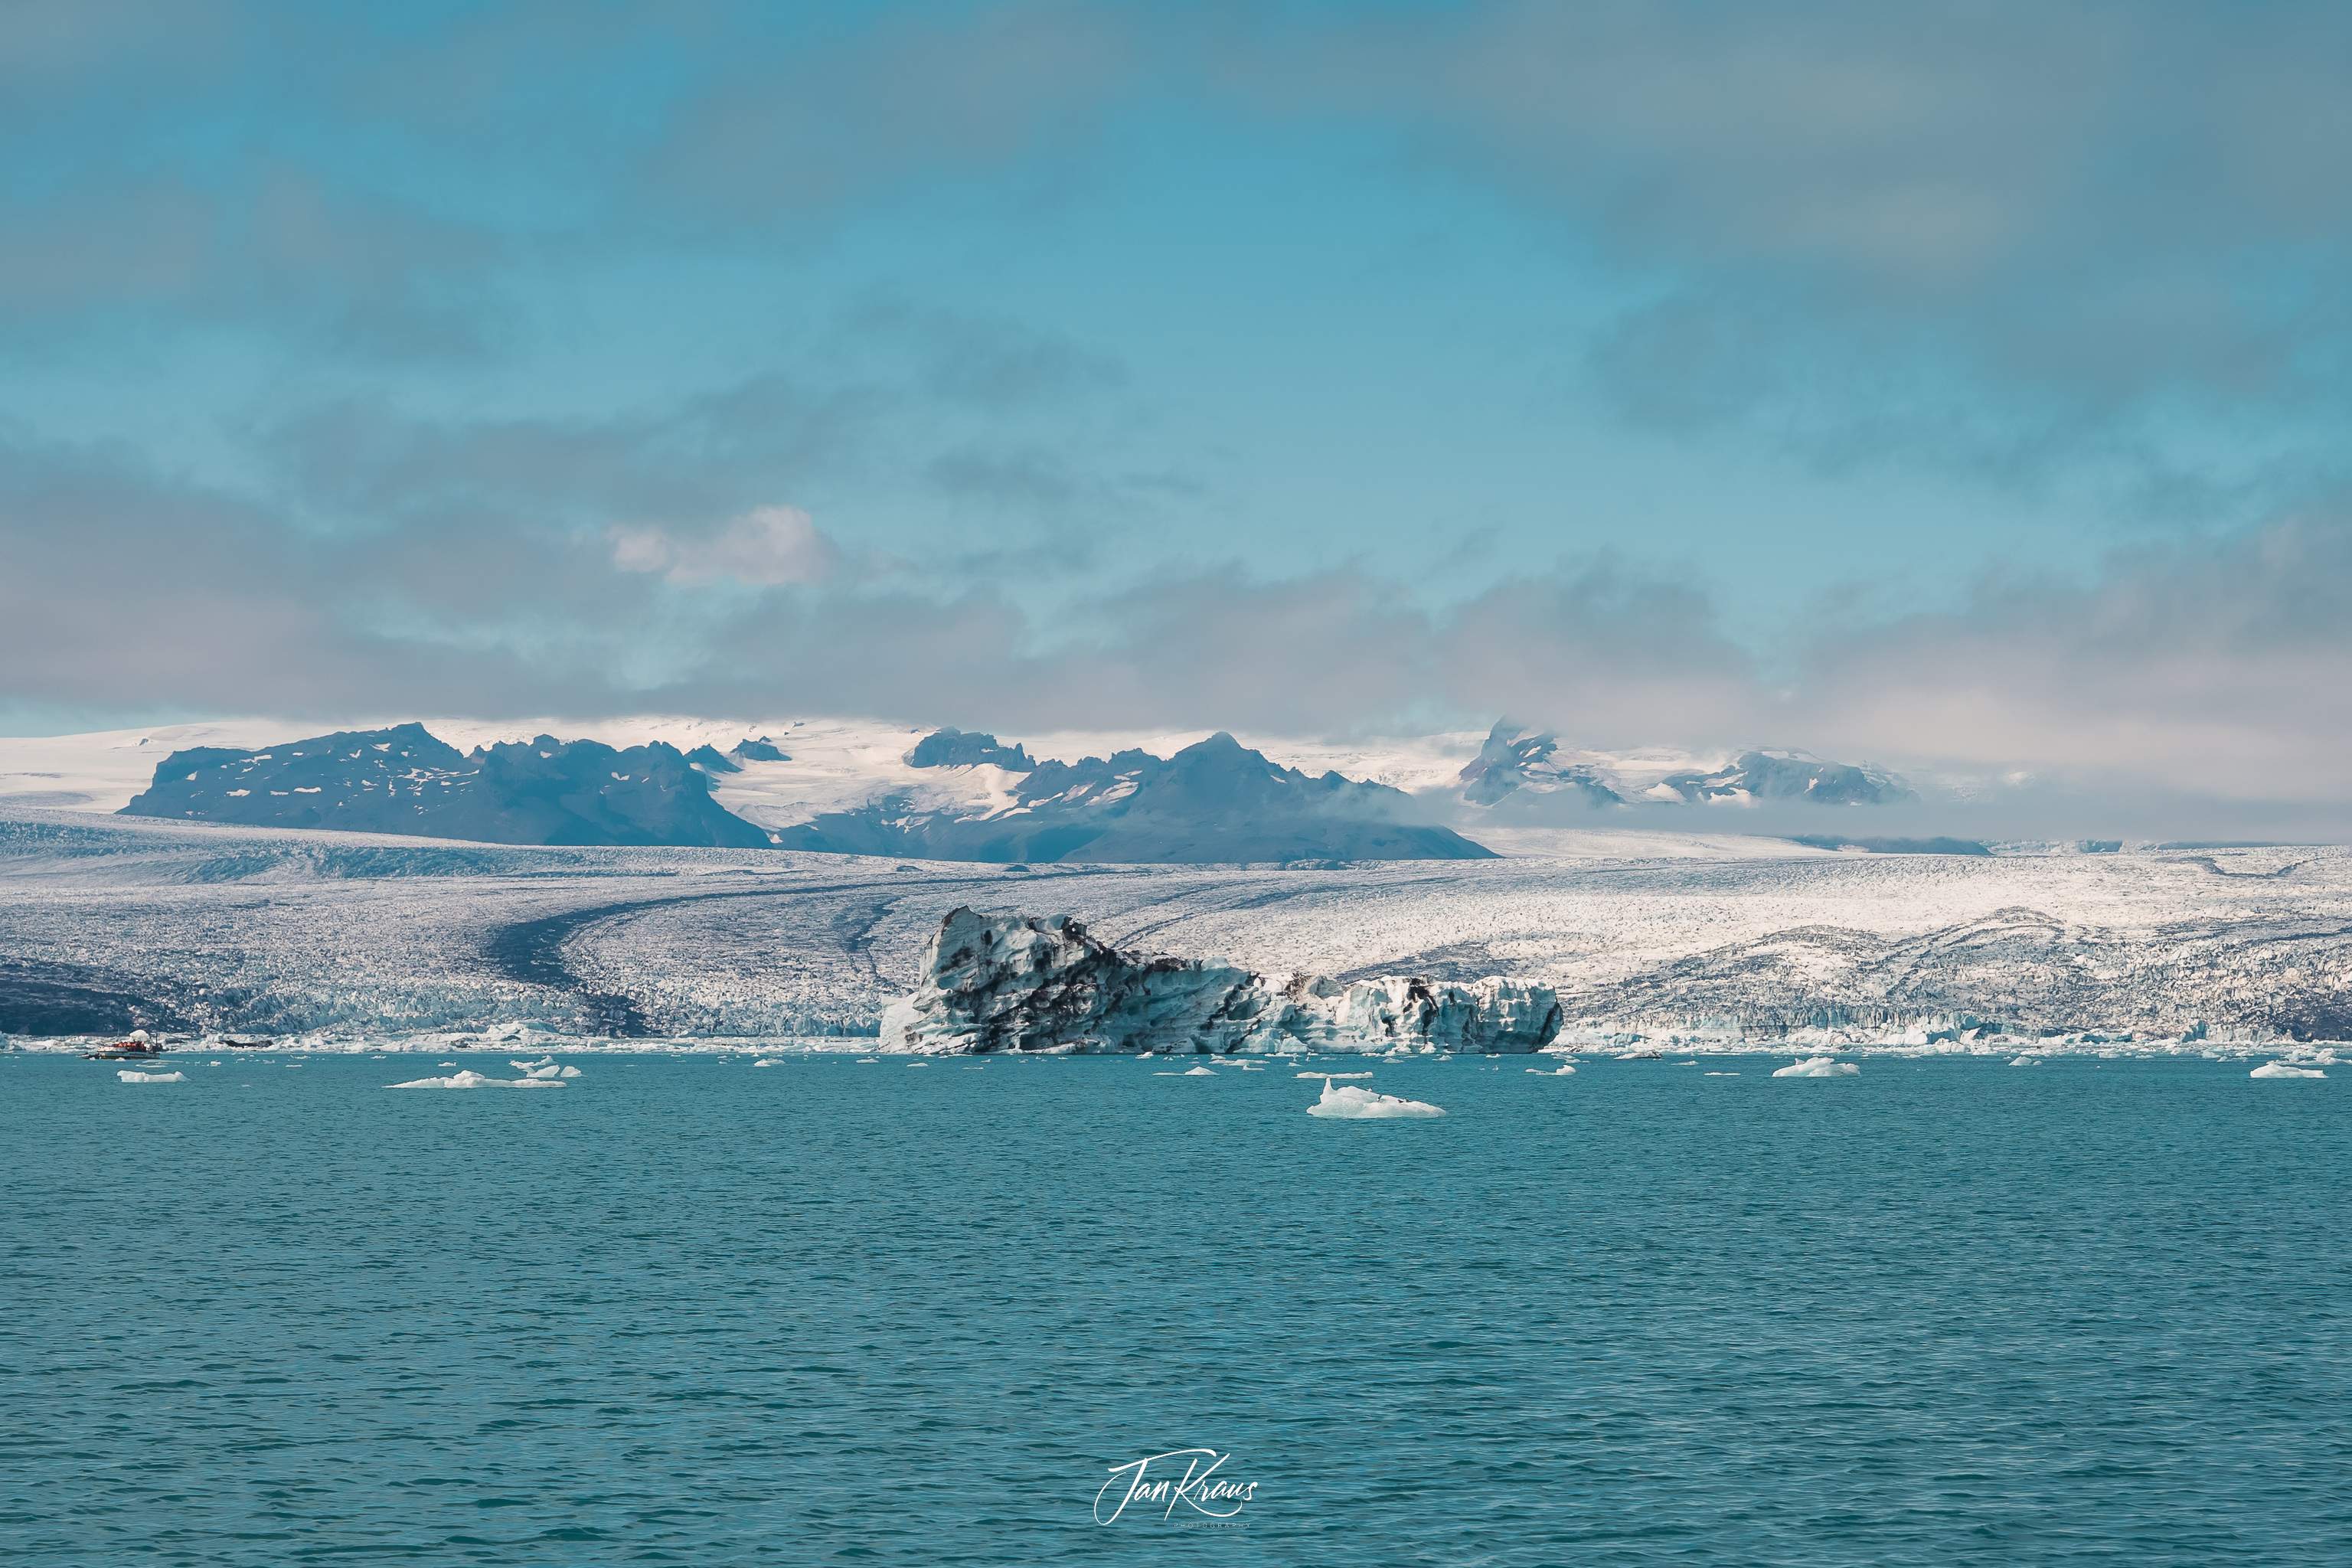 View of Breiðamerkurjökull glacier from Jökulsárlón Glacier Lagoon, Iceland